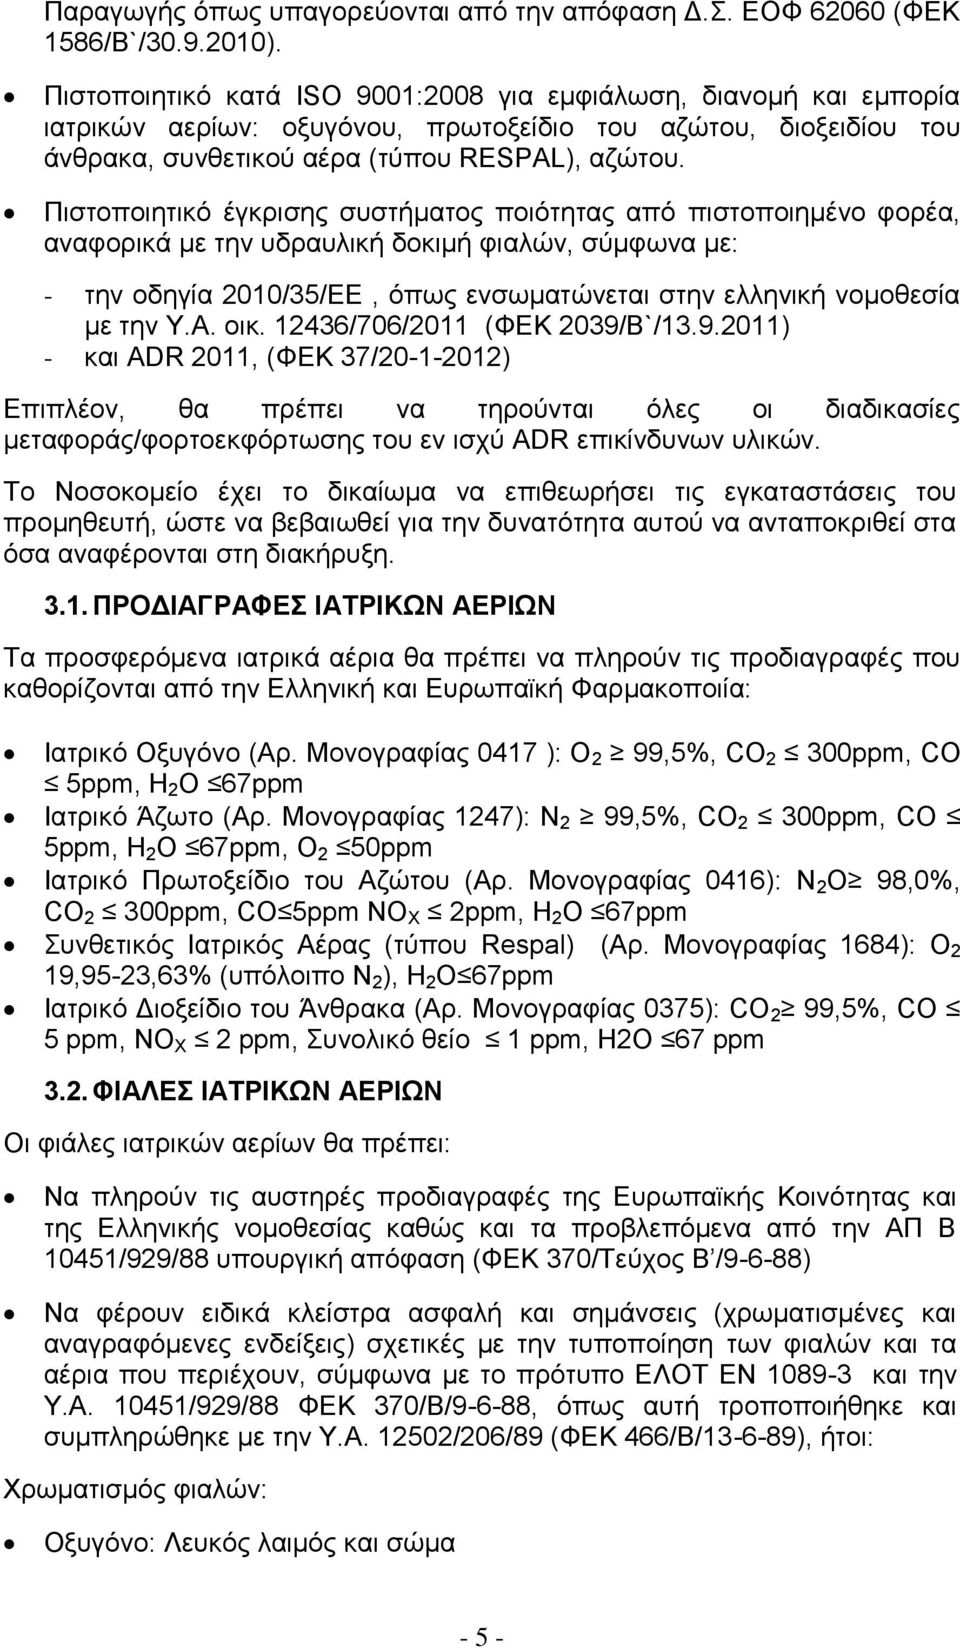 Πιστοποιητικό έγκρισης συστήματος ποιότητας από πιστοποιημένο φορέα, αναφορικά με την υδραυλική δοκιμή φιαλών, σύμφωνα με: - την οδηγία 2010/35/ΕΕ, όπως ενσωματώνεται στην ελληνική νομοθεσία με την Υ.